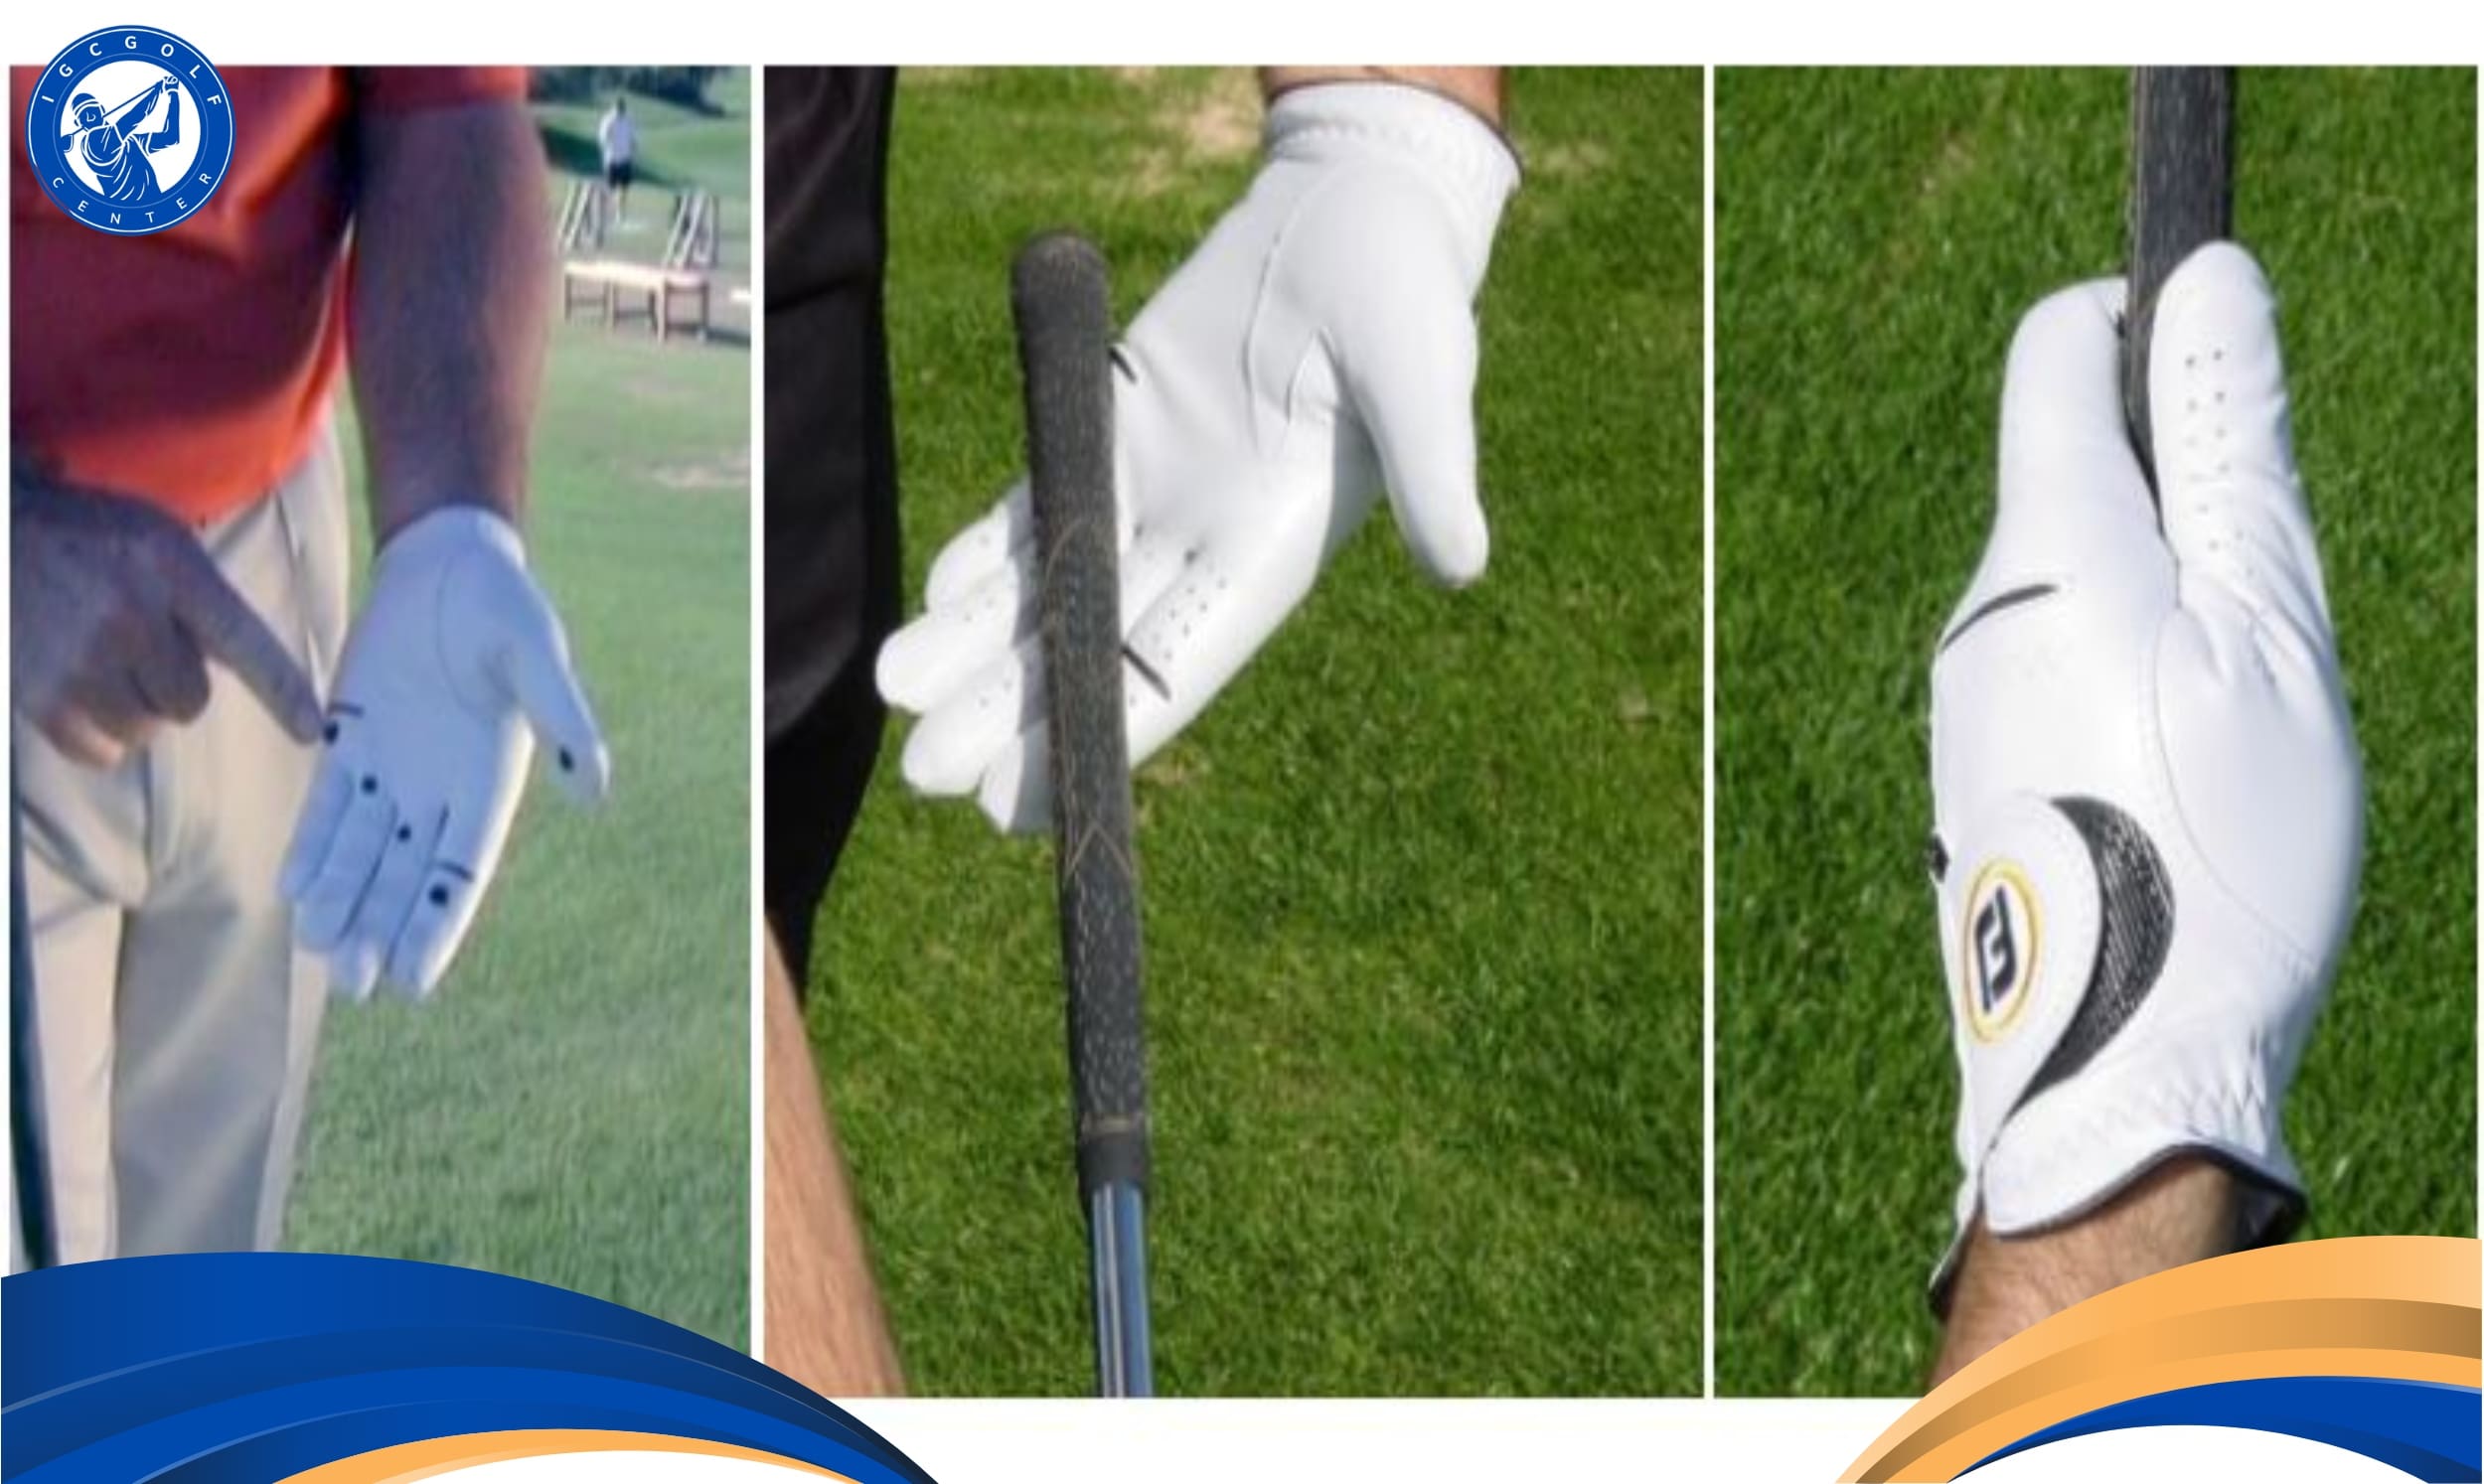 Hướng dẫn cách cầm gậy golf tay trái chi tiết nhất